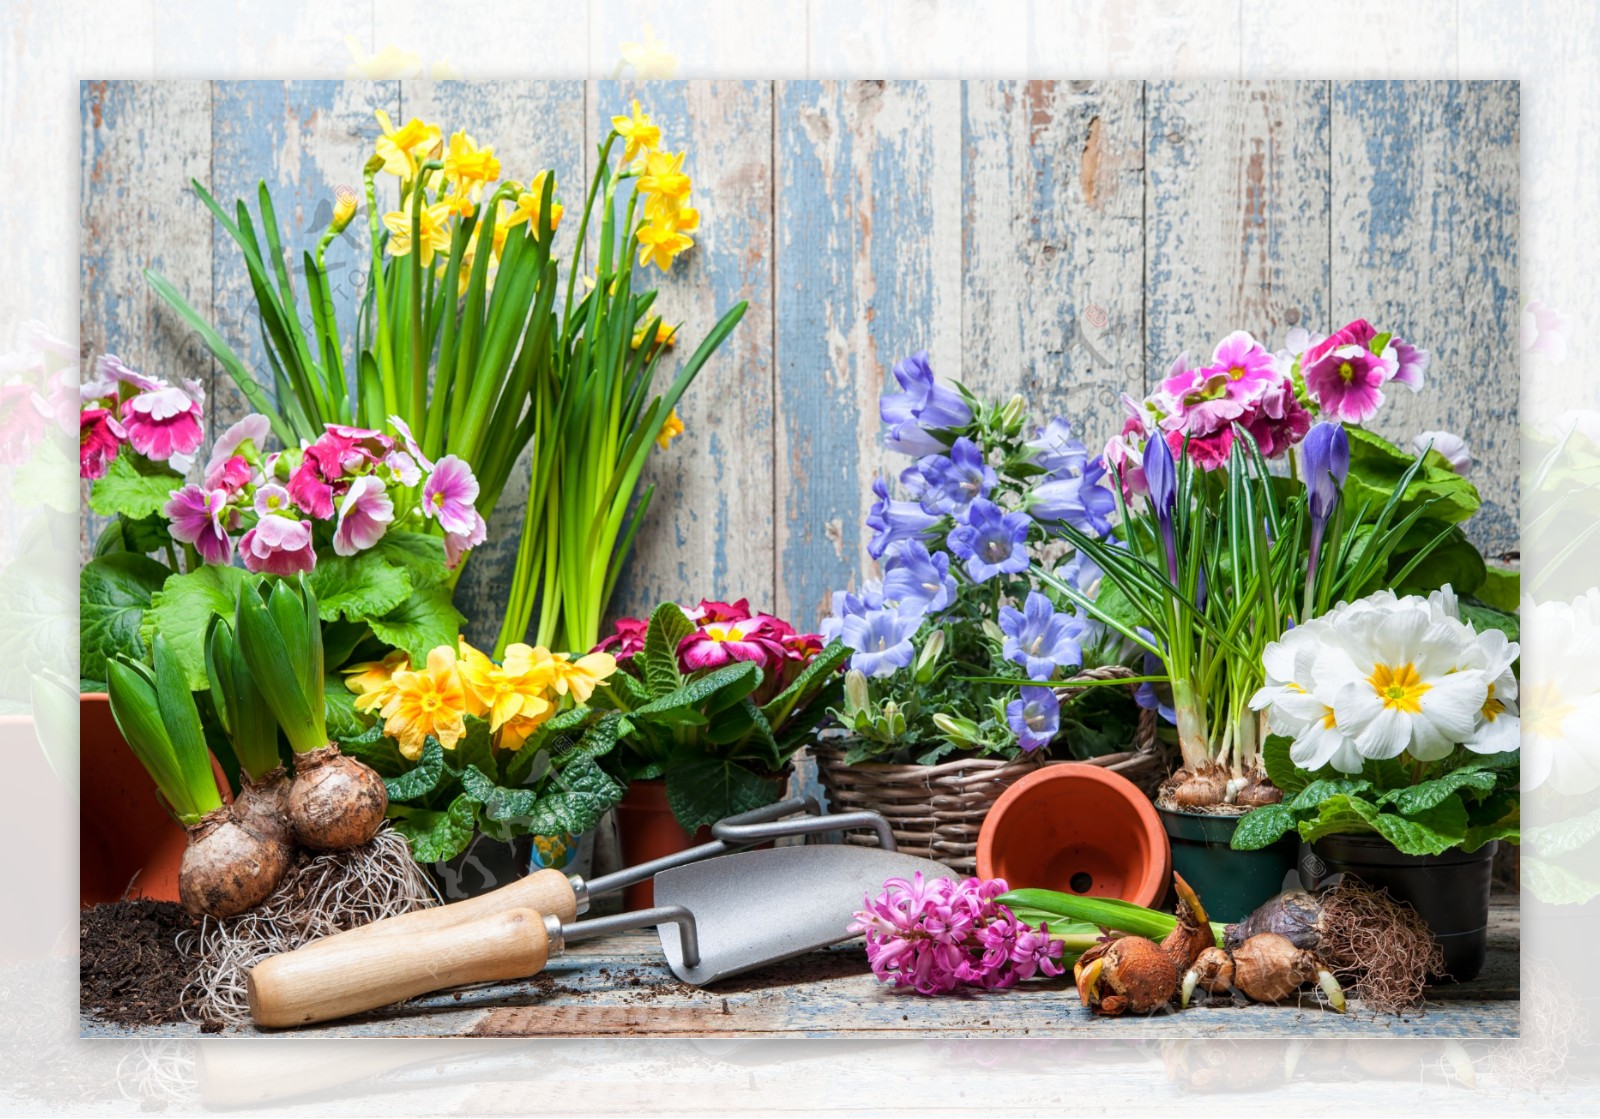 木板下的鲜花与园艺工具